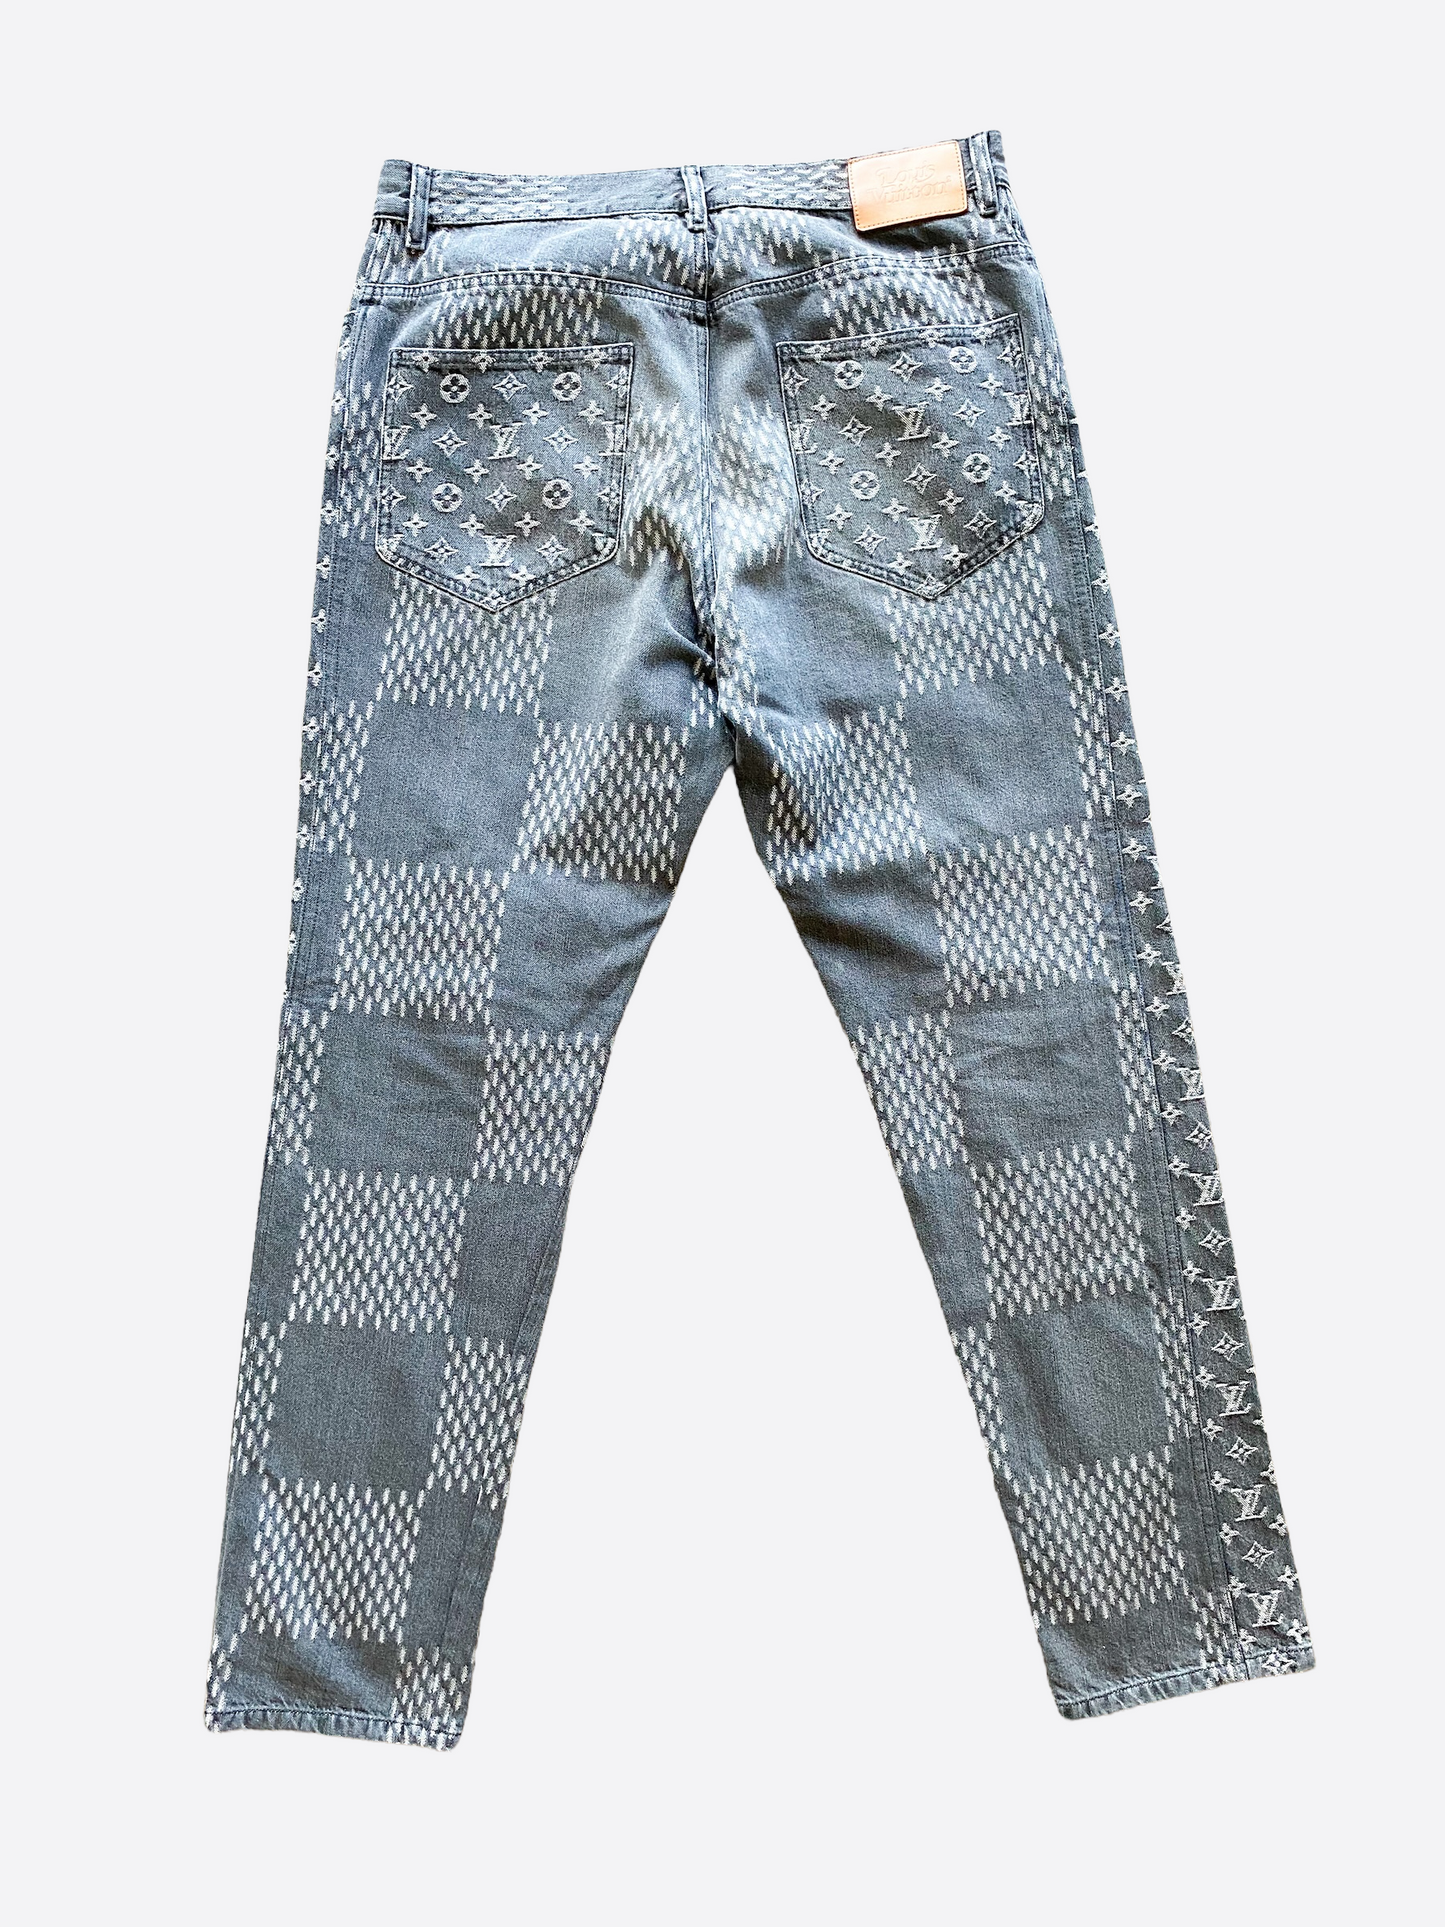 Louis Vuitton x Nigo Monogram Patchwork Jeans - Blue, 12.25 Rise